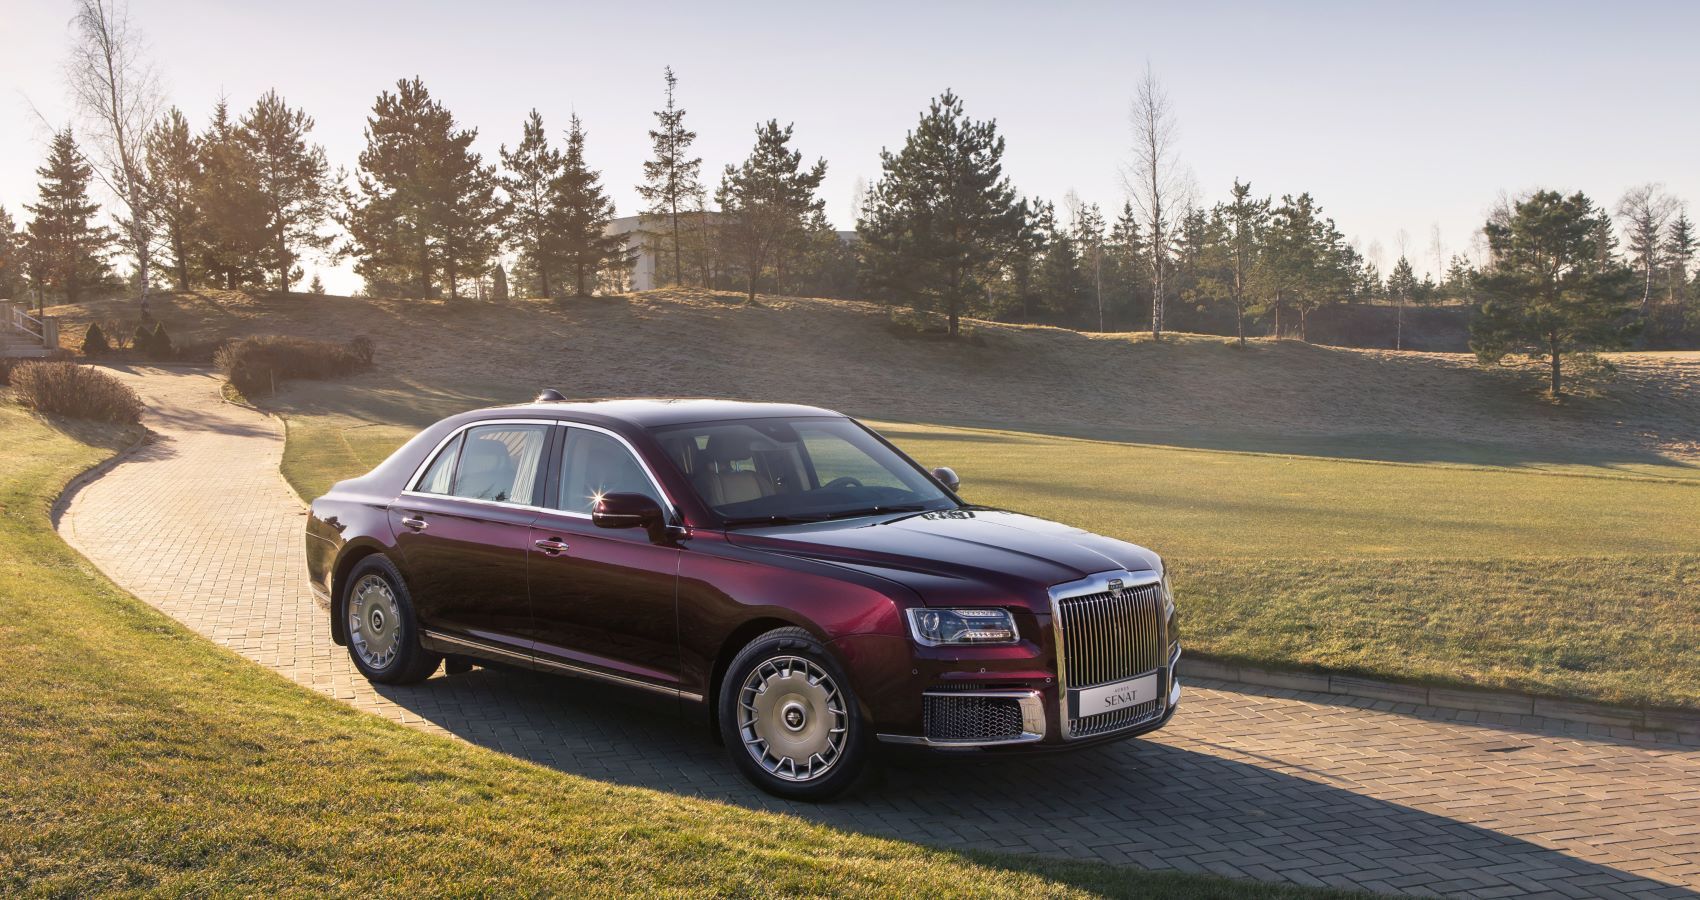 2020 Aurus Senat luxury sedan priced at about $274,000 - Autoblog